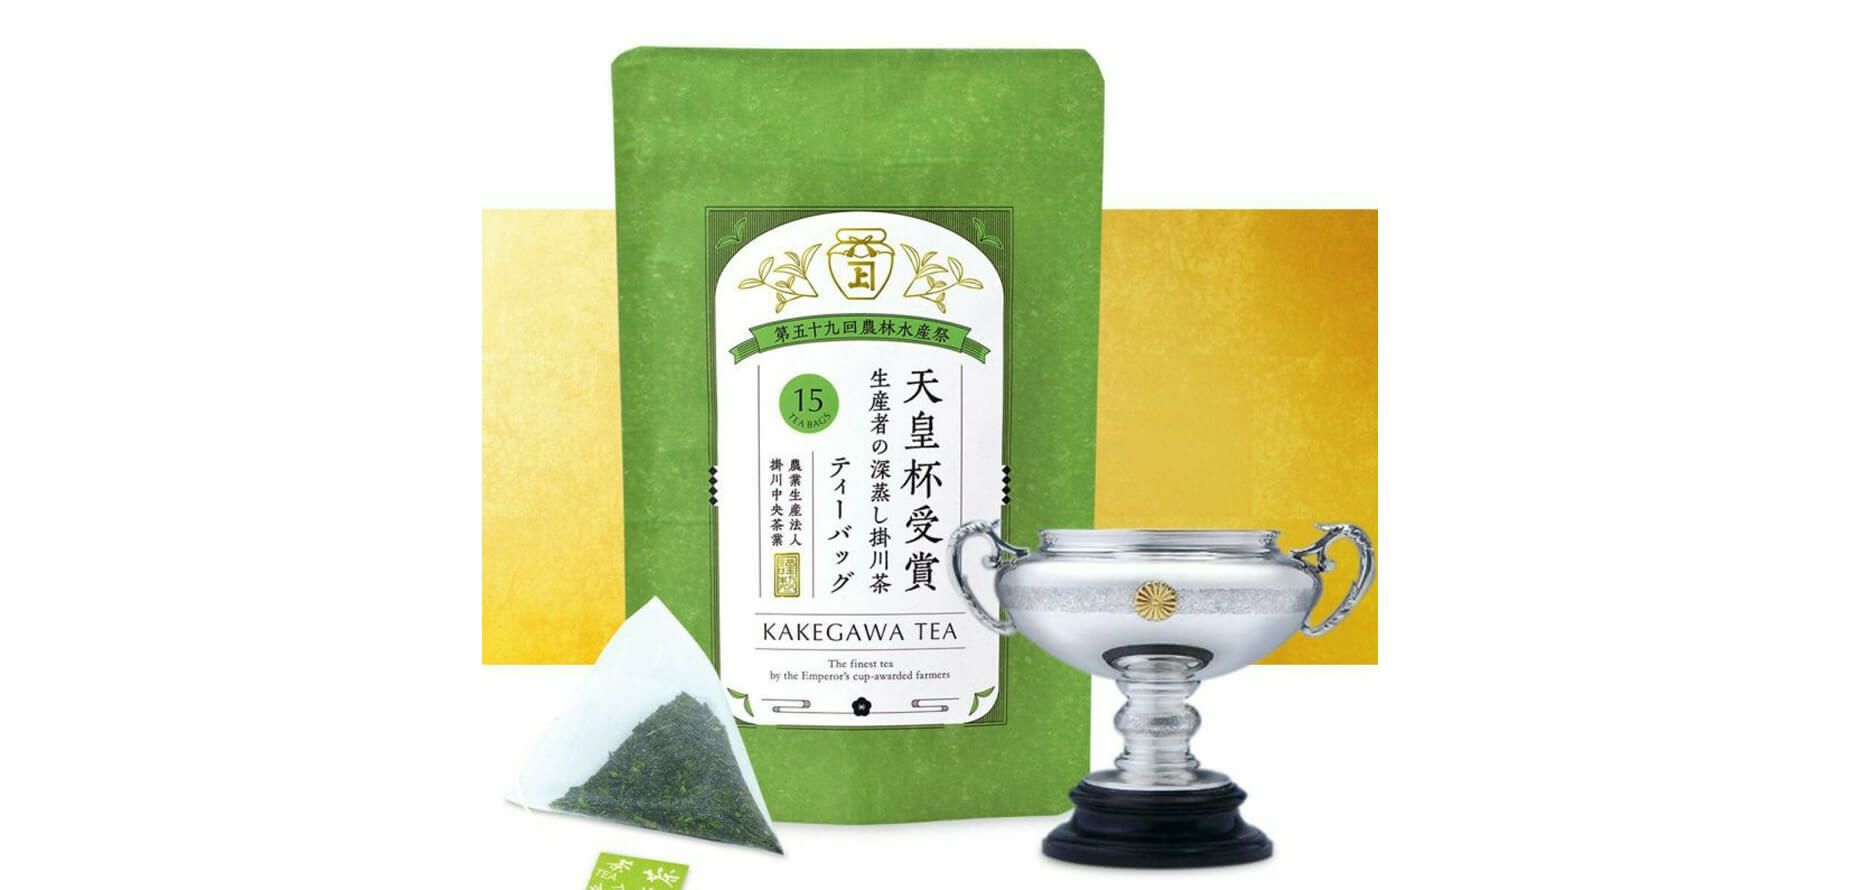 【5月中旬頃から順次発送】新茶 「天皇杯受賞」生産者の深蒸し掛川茶ティーバッグ 15個入り